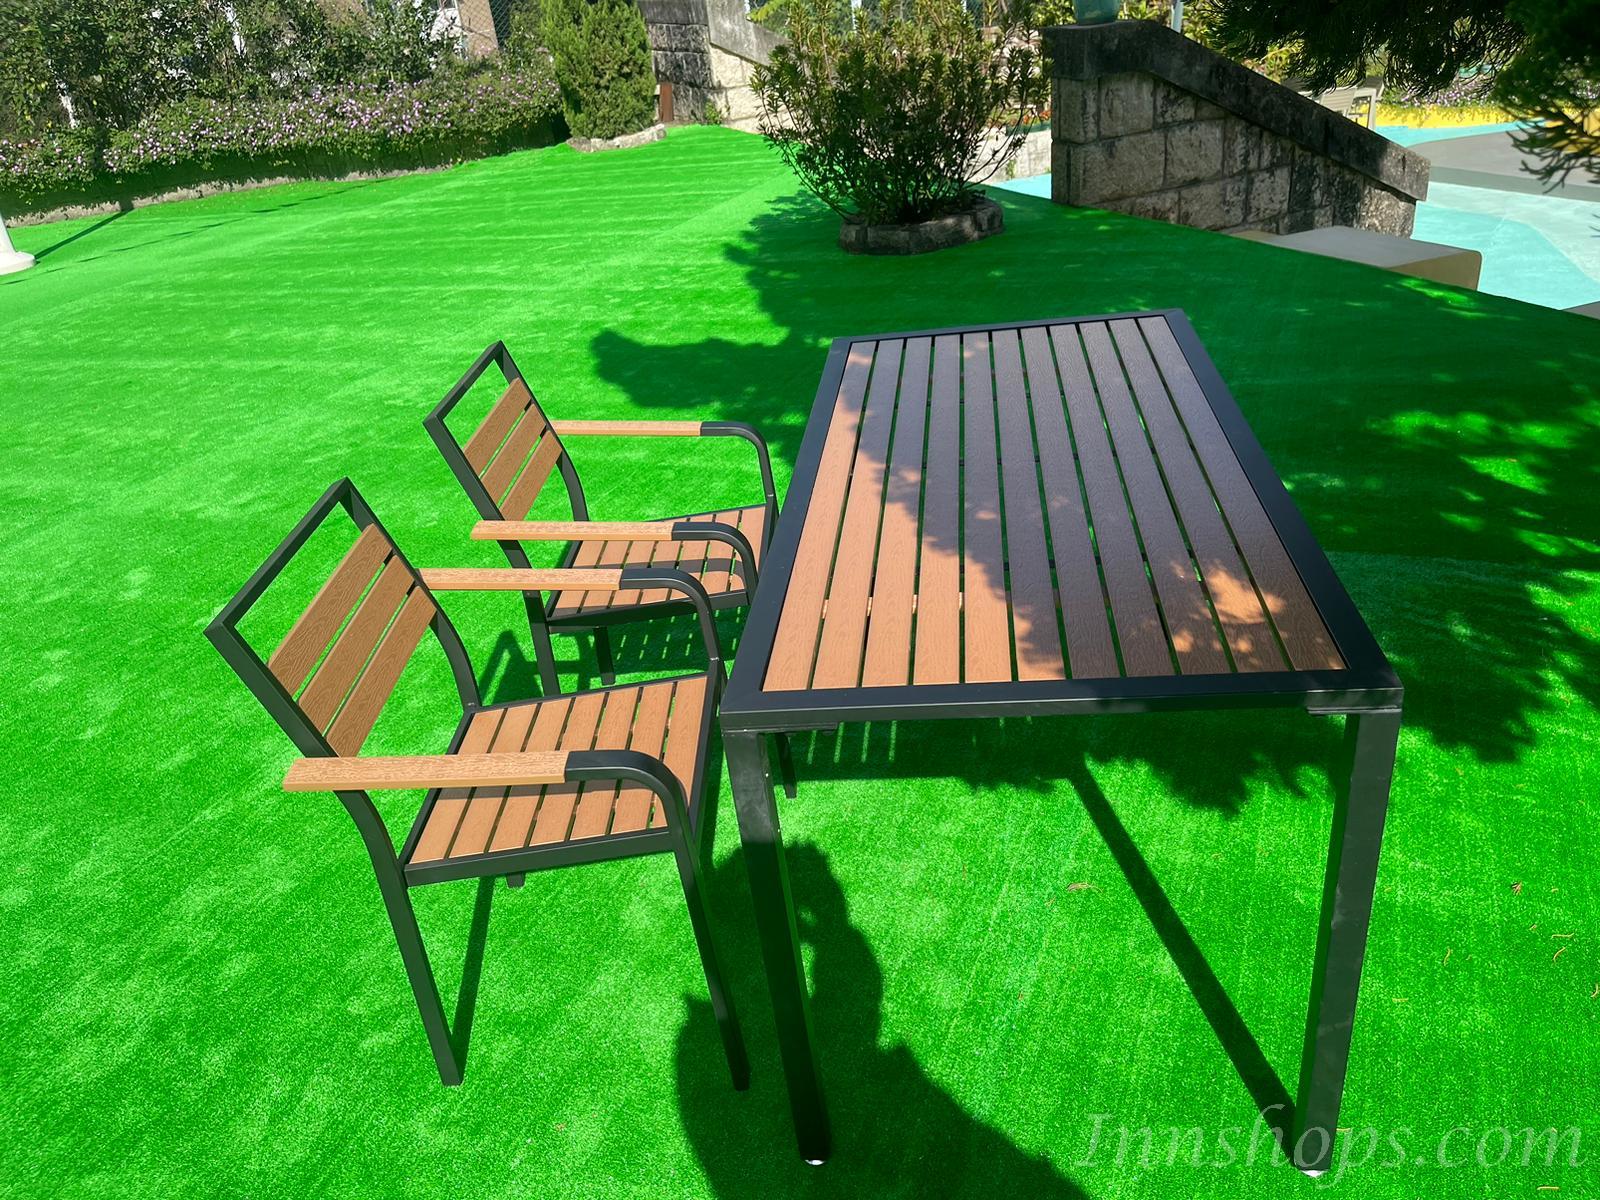 商業客戶訂購產品系列 戶外傢具塑木桌椅套裝*可自訂尺寸 (IS7578)